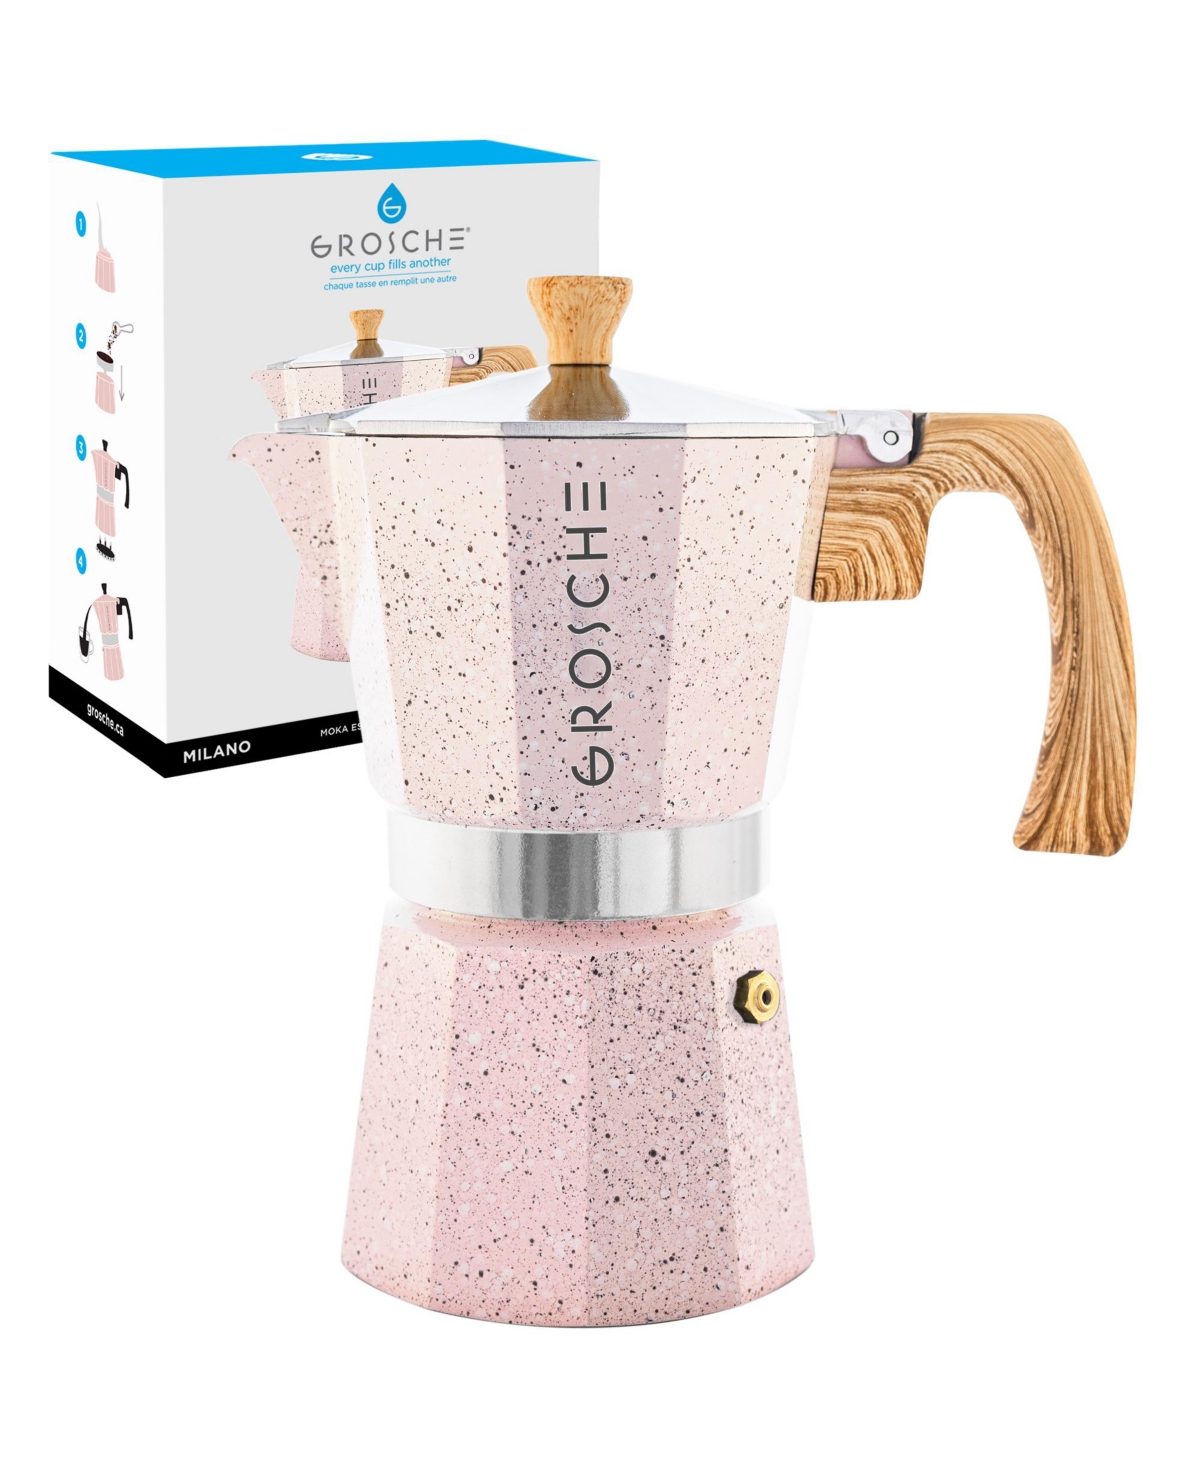 Grosche Milano Stone Stovetop Espresso Maker Moka Pot 6 Cup, 9.3 oz In Blush Pink